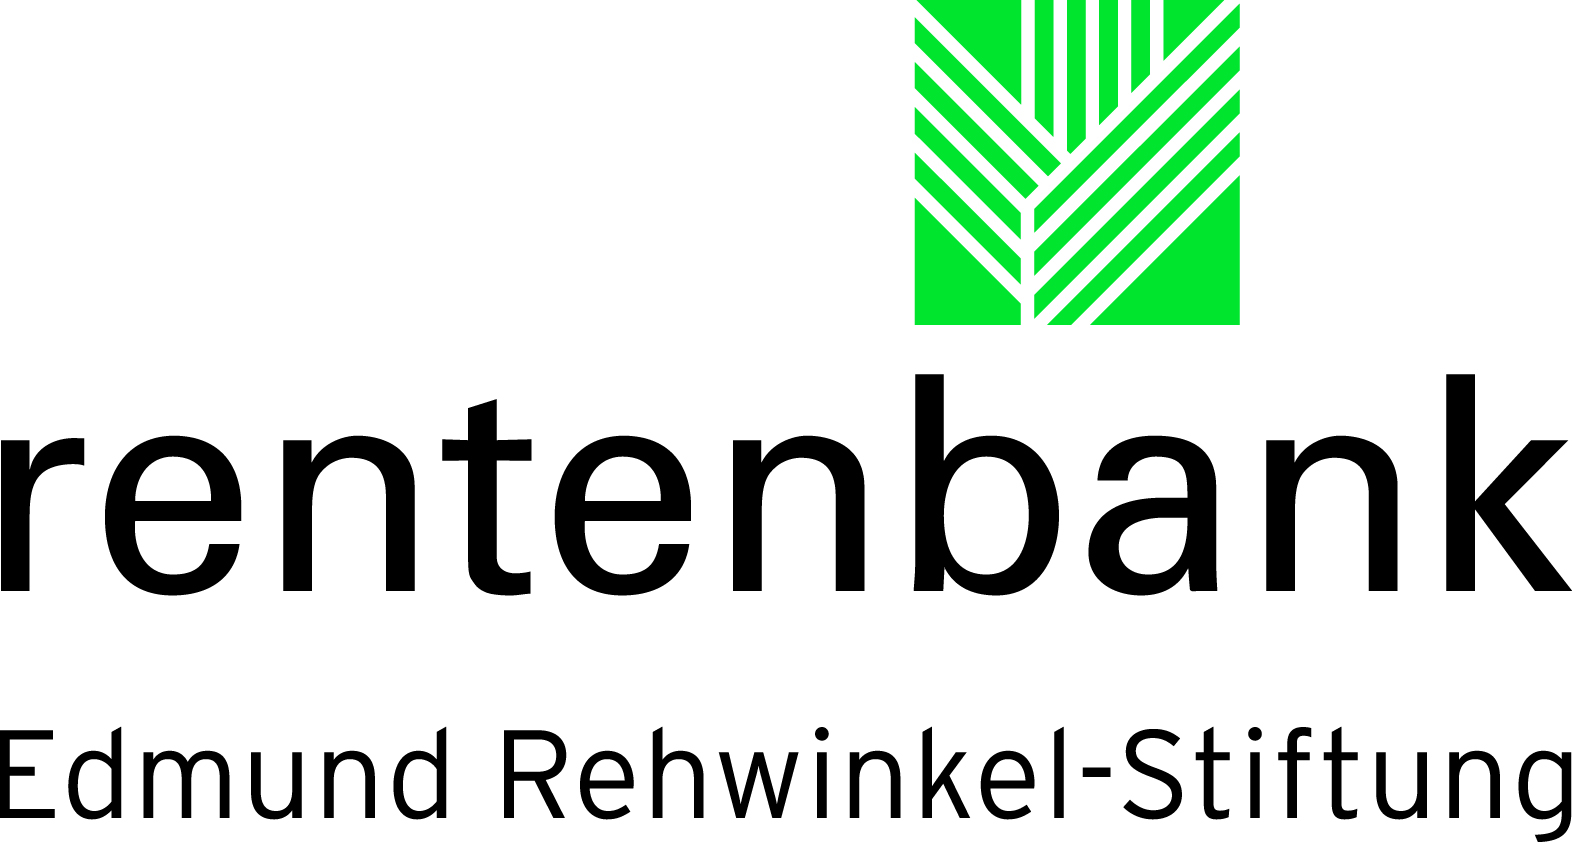 Rentenbank